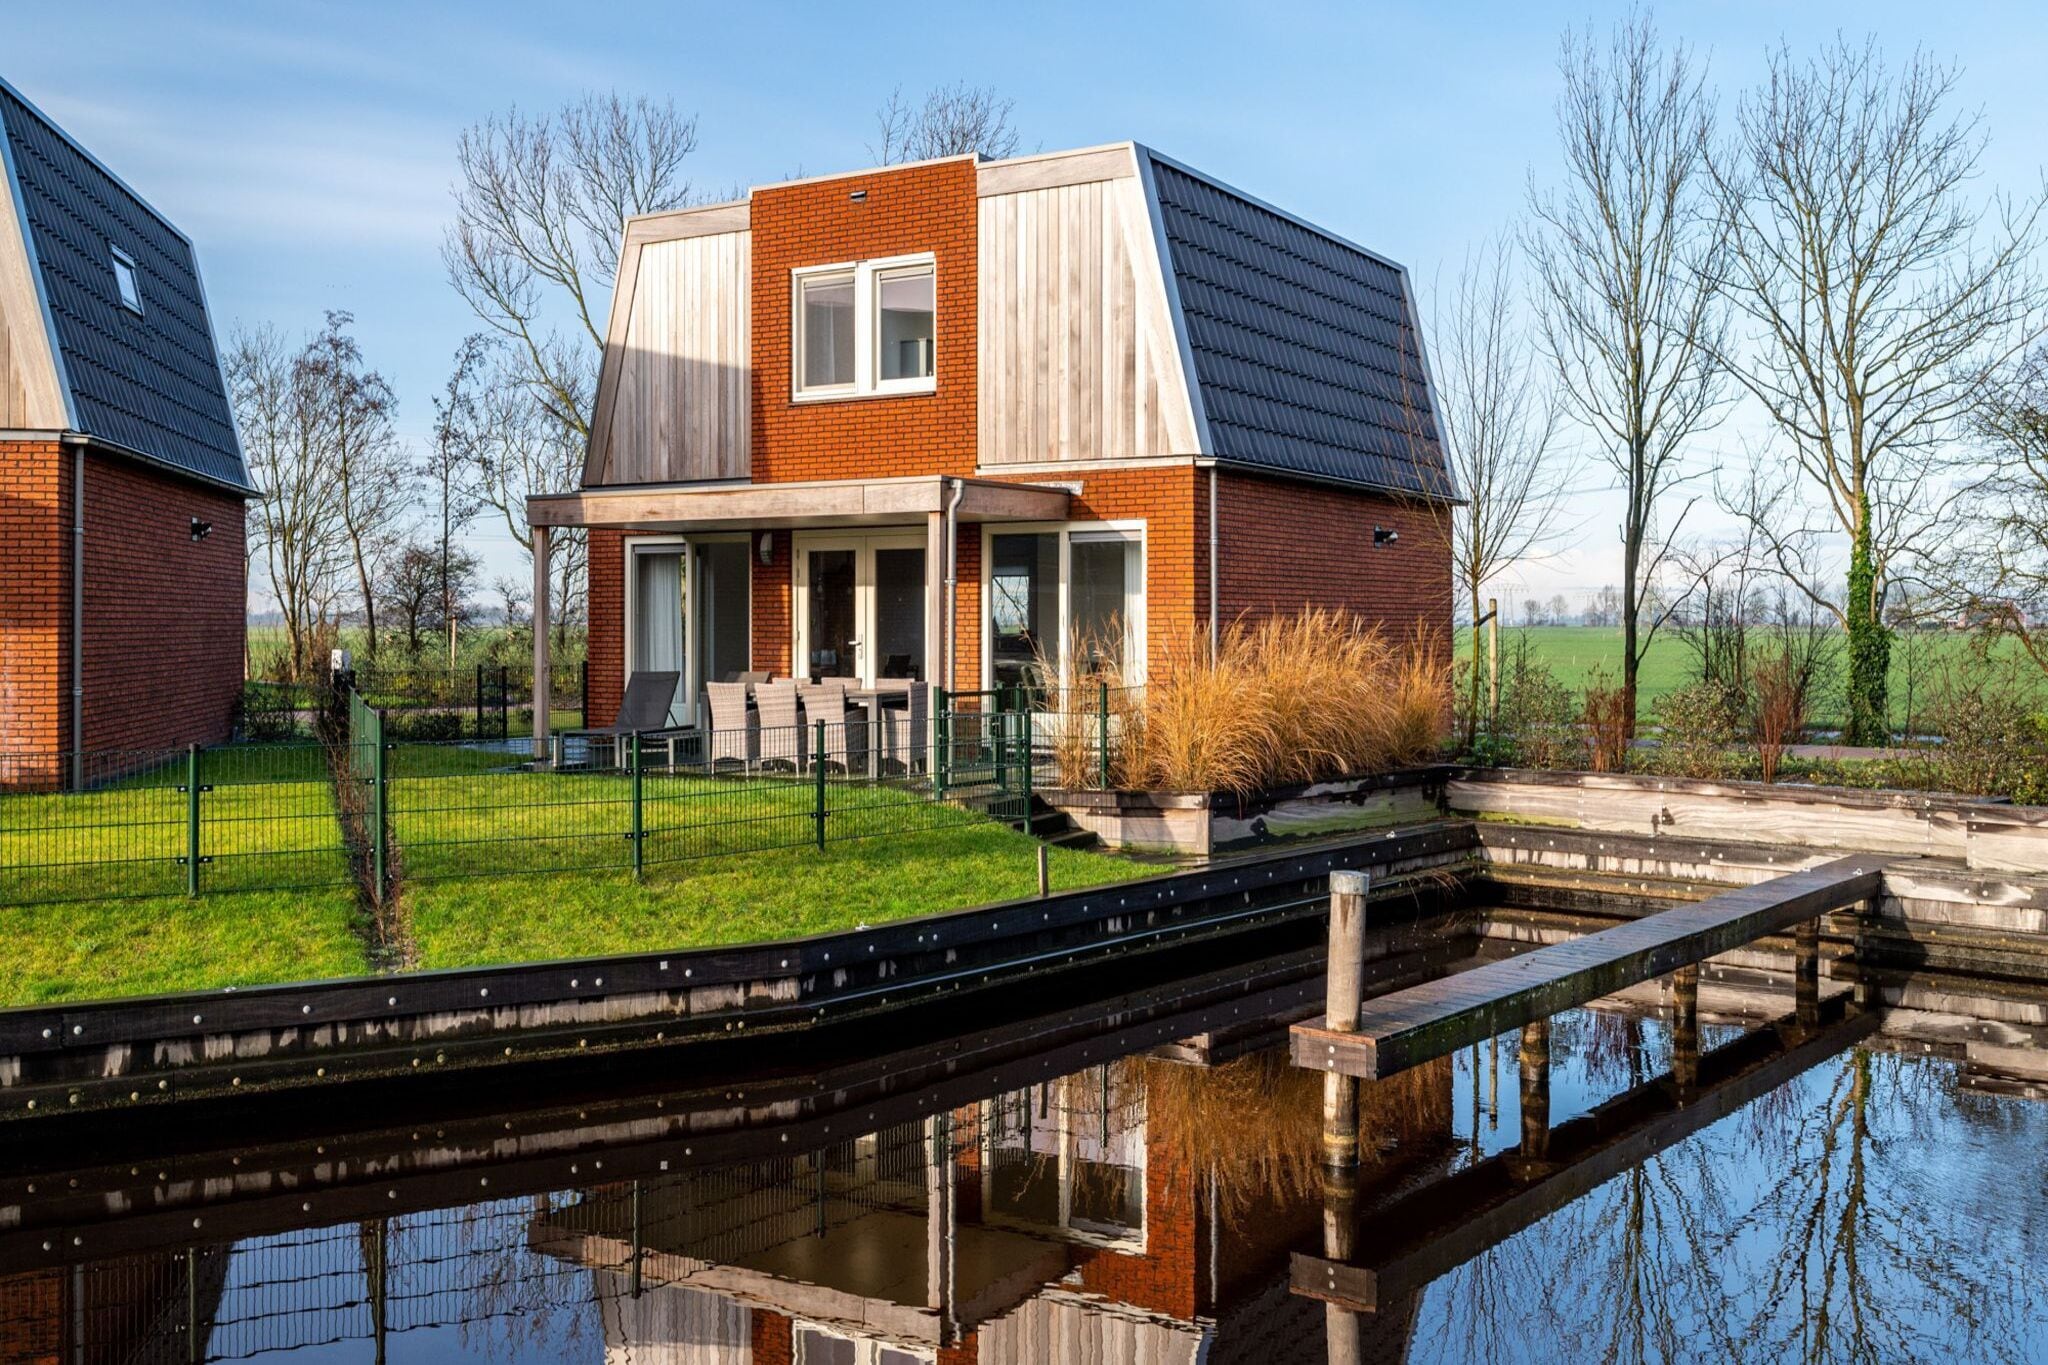 Riant vakantiehuis met buitenspa in Friesland